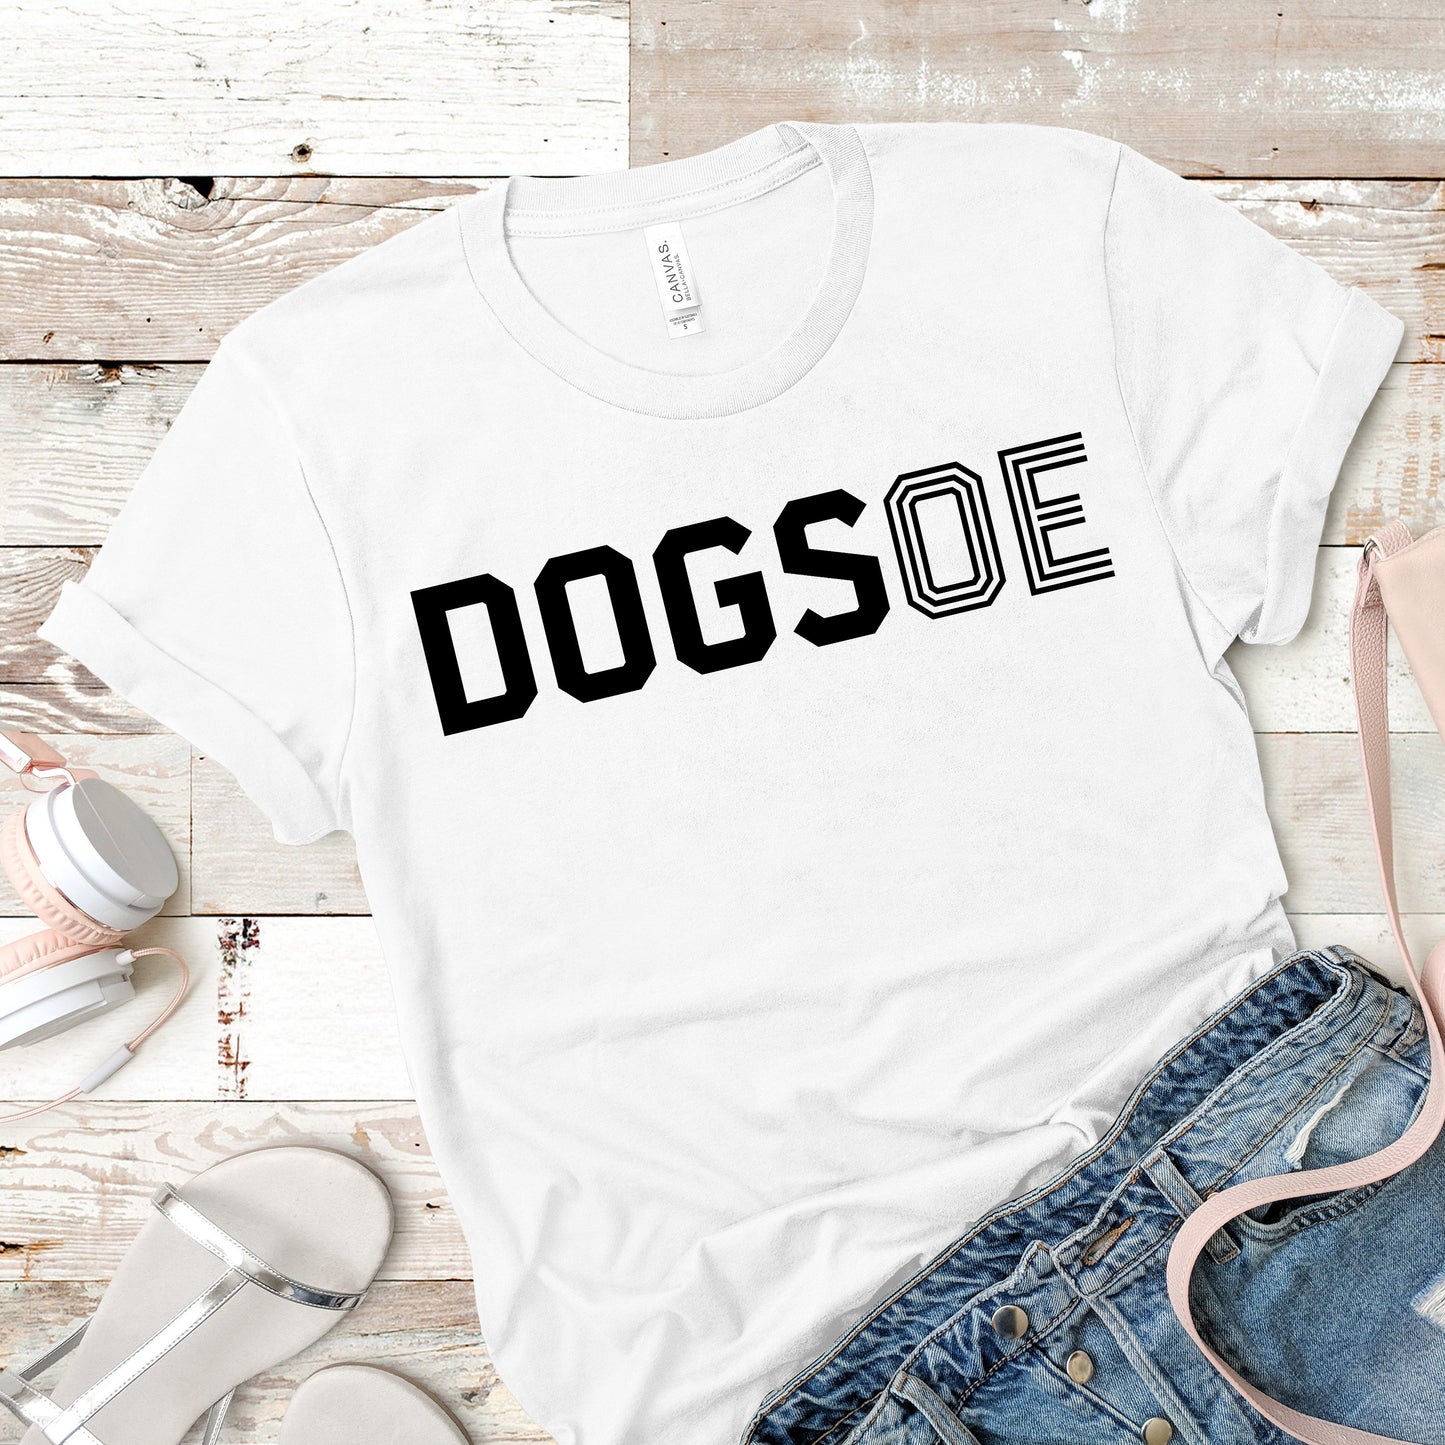 DOGS OE | Dog Lovers Shirt